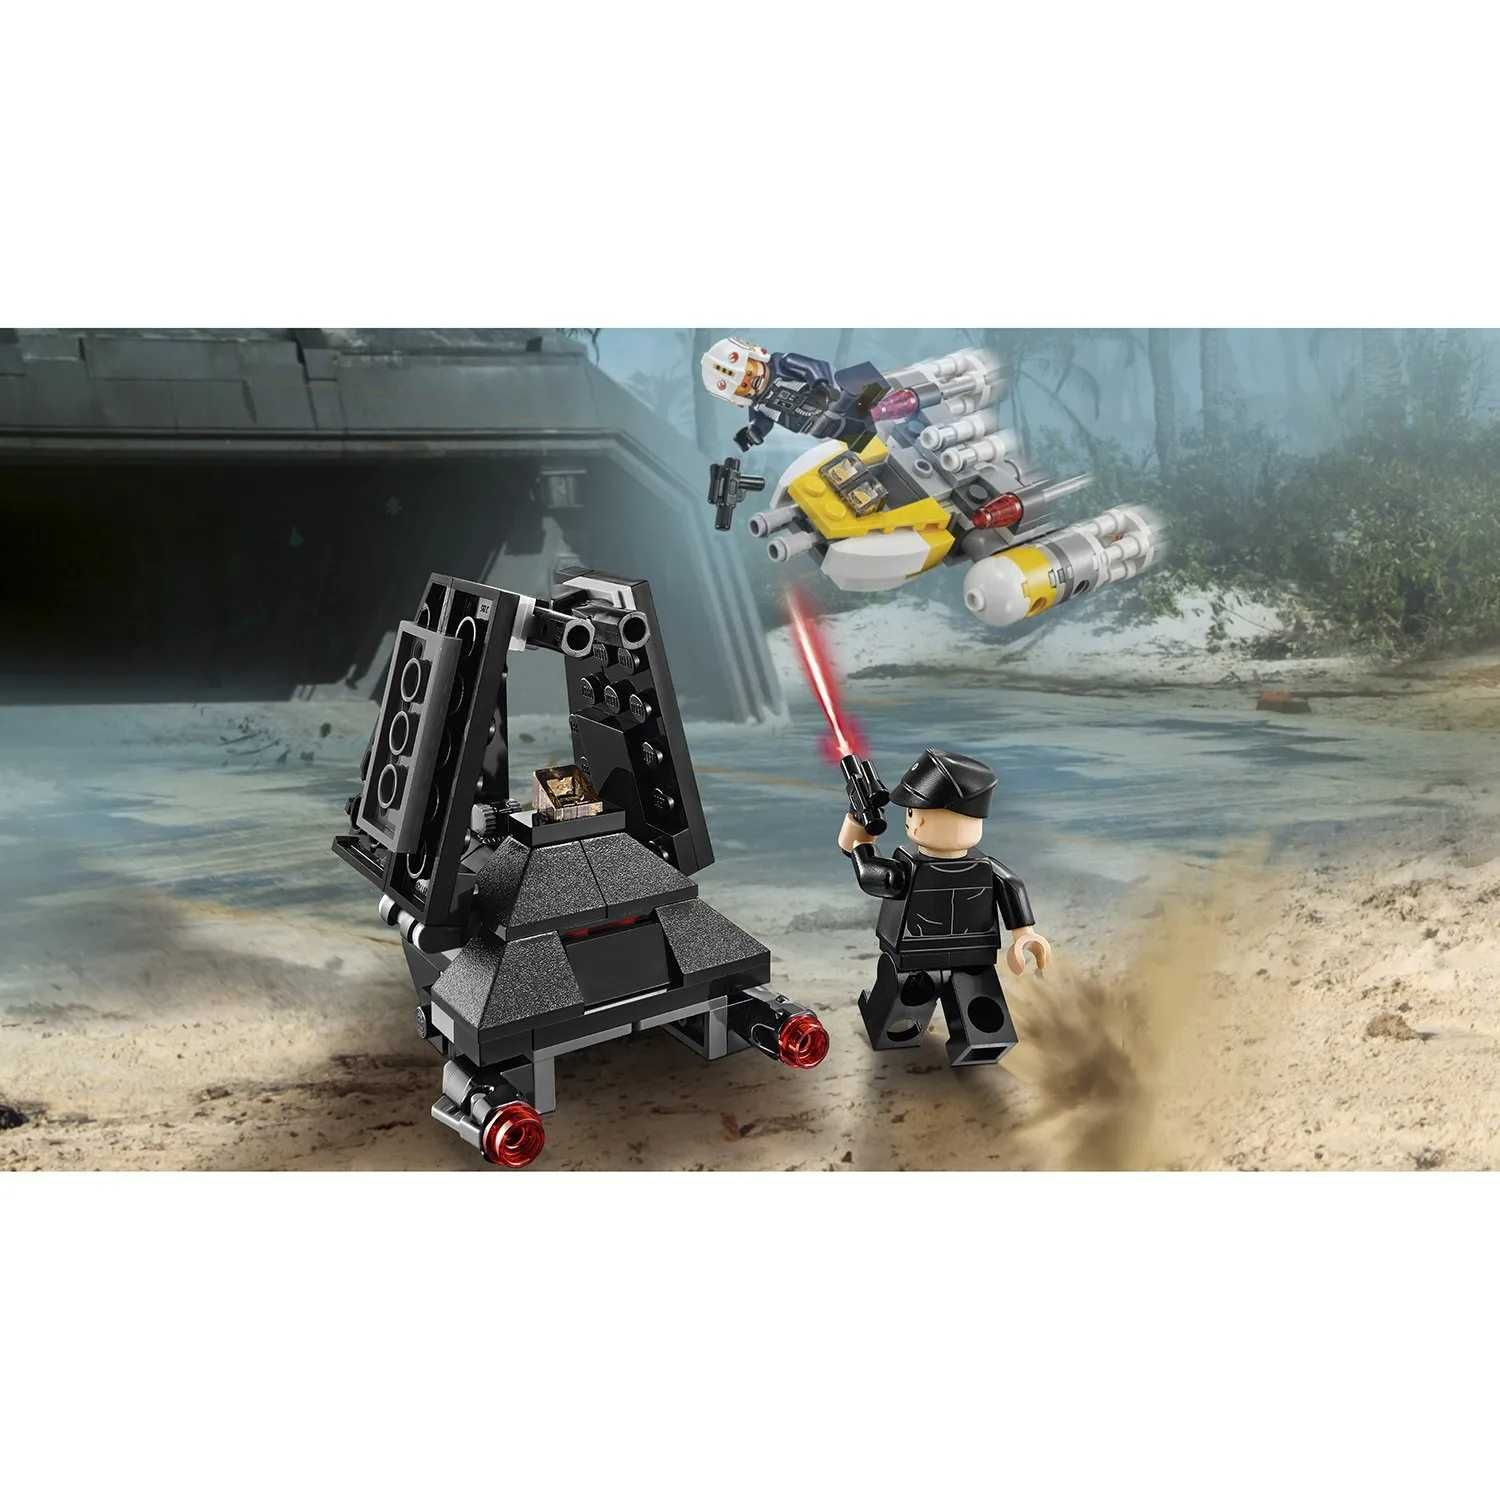 LEGO 75163 Star Wars TM Микроистребитель «Имперский шаттл Кренника»